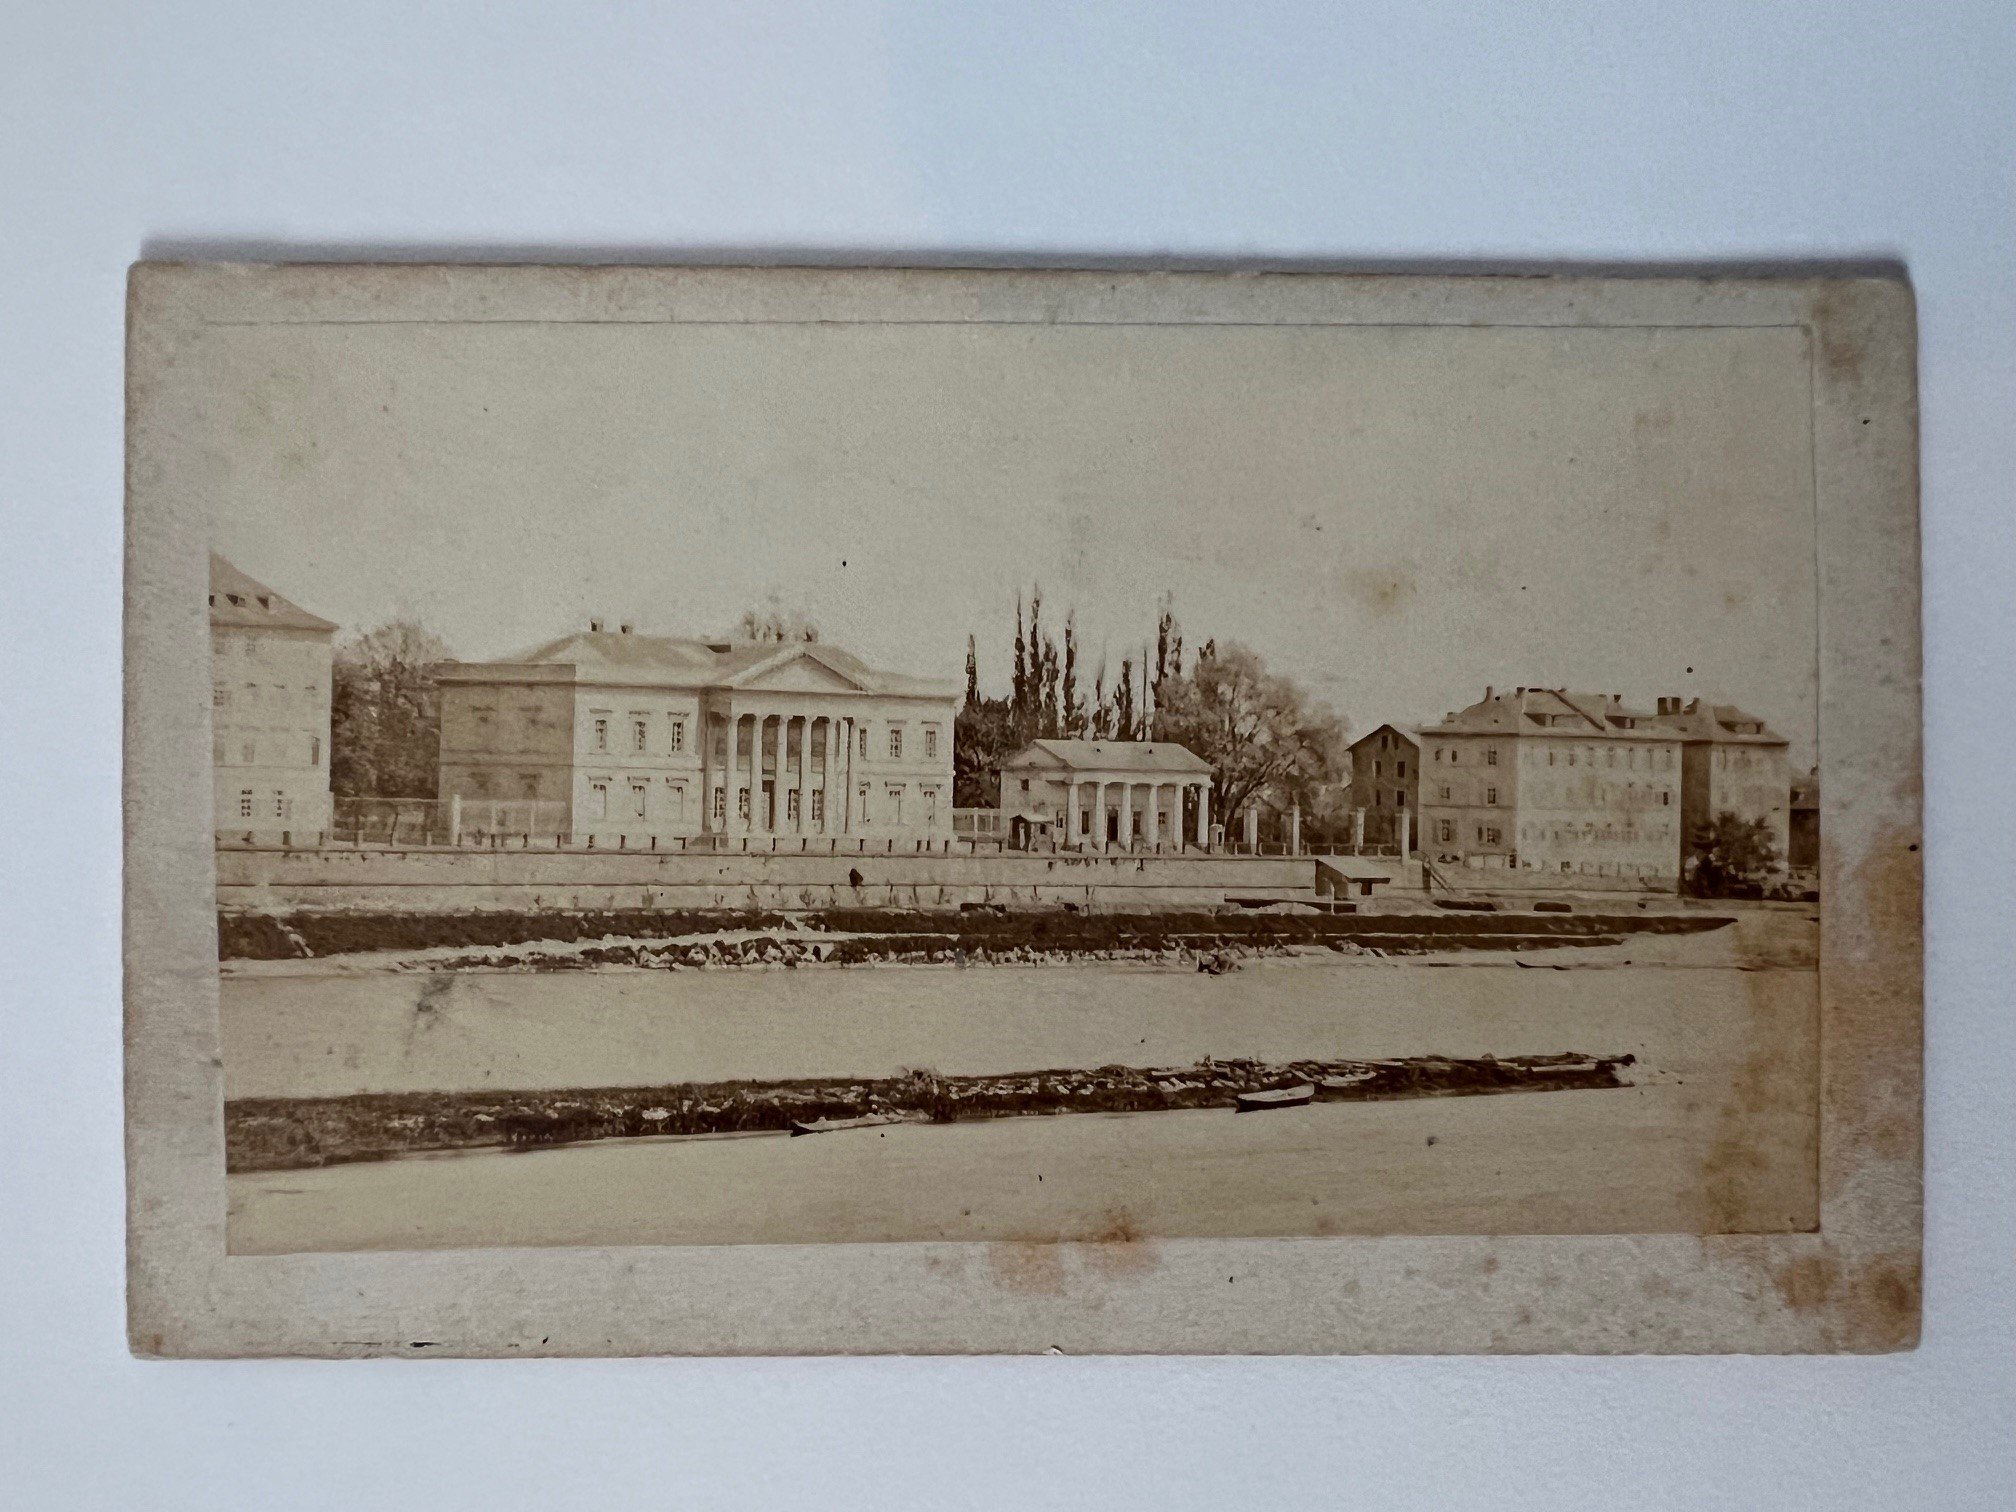 CdV, Unbekannter Fotograf, Frankfurt, Stadtbibliothek am Main, ca. 1865. (Taunus-Rhein-Main - Regionalgeschichtliche Sammlung Dr. Stefan Naas CC BY-NC-SA)